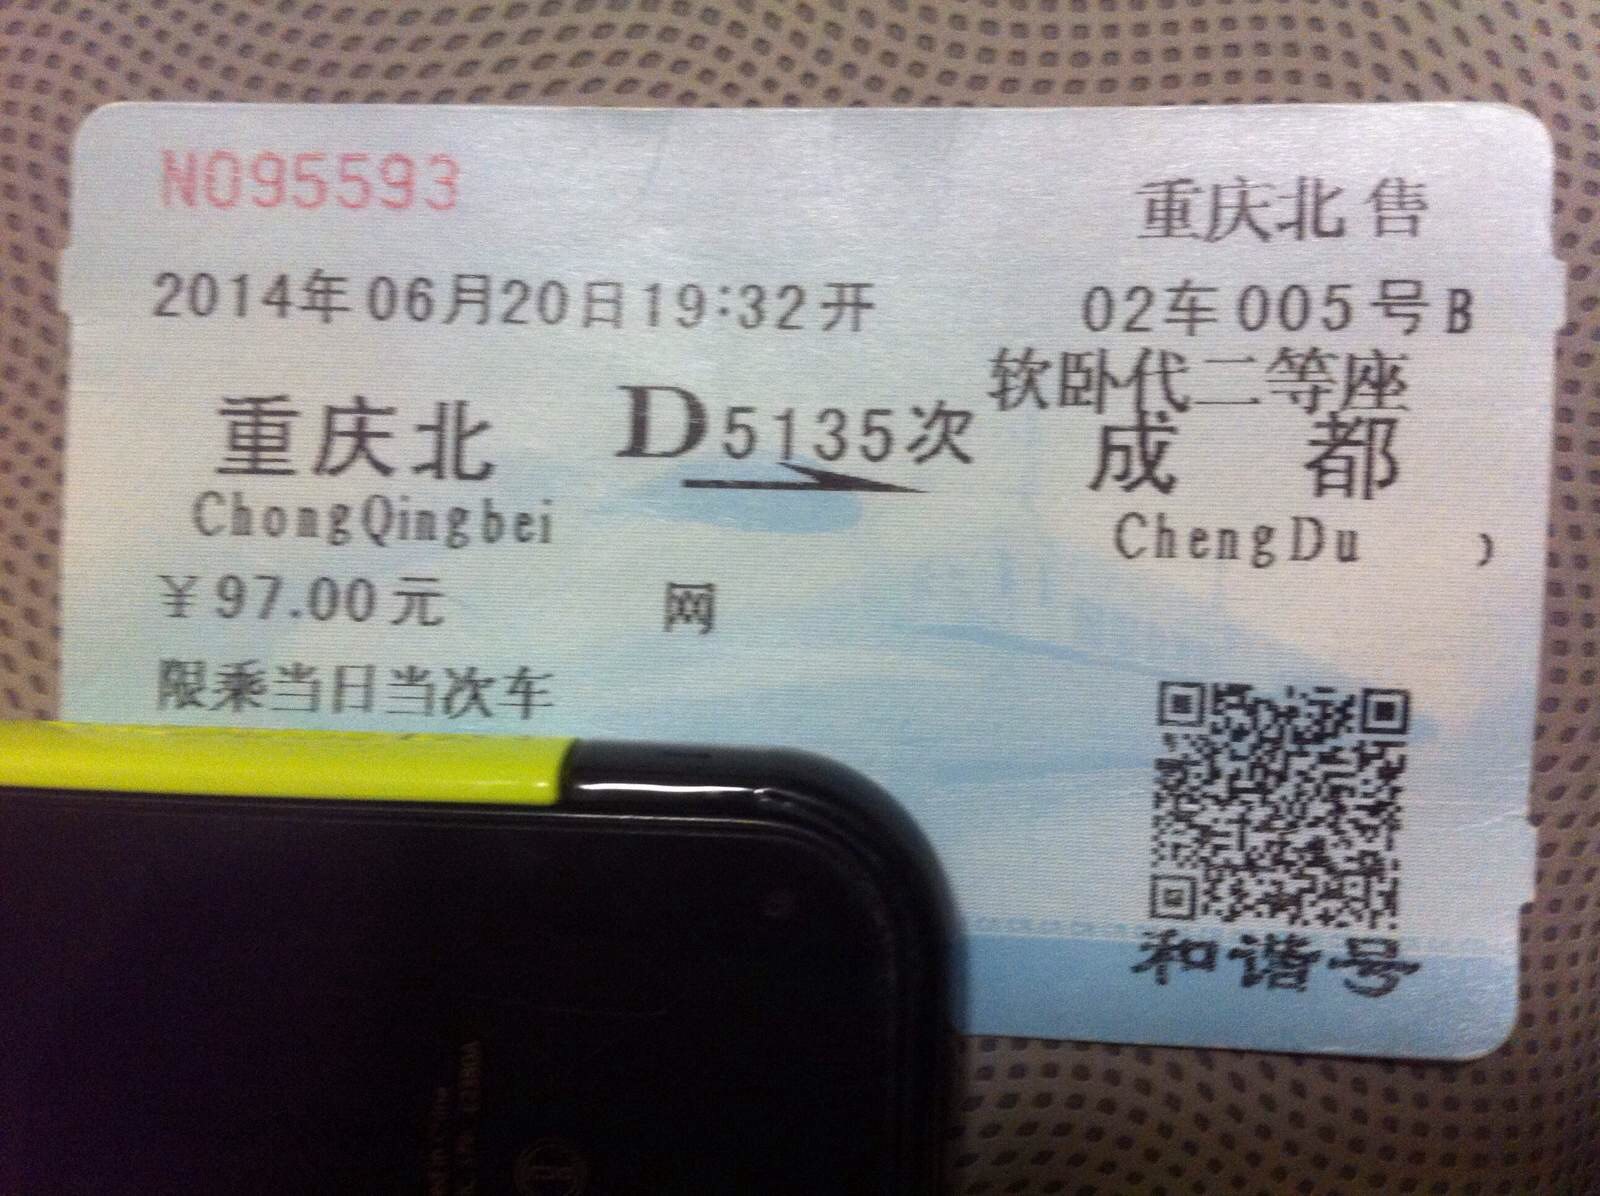 重庆一一成都的火车票